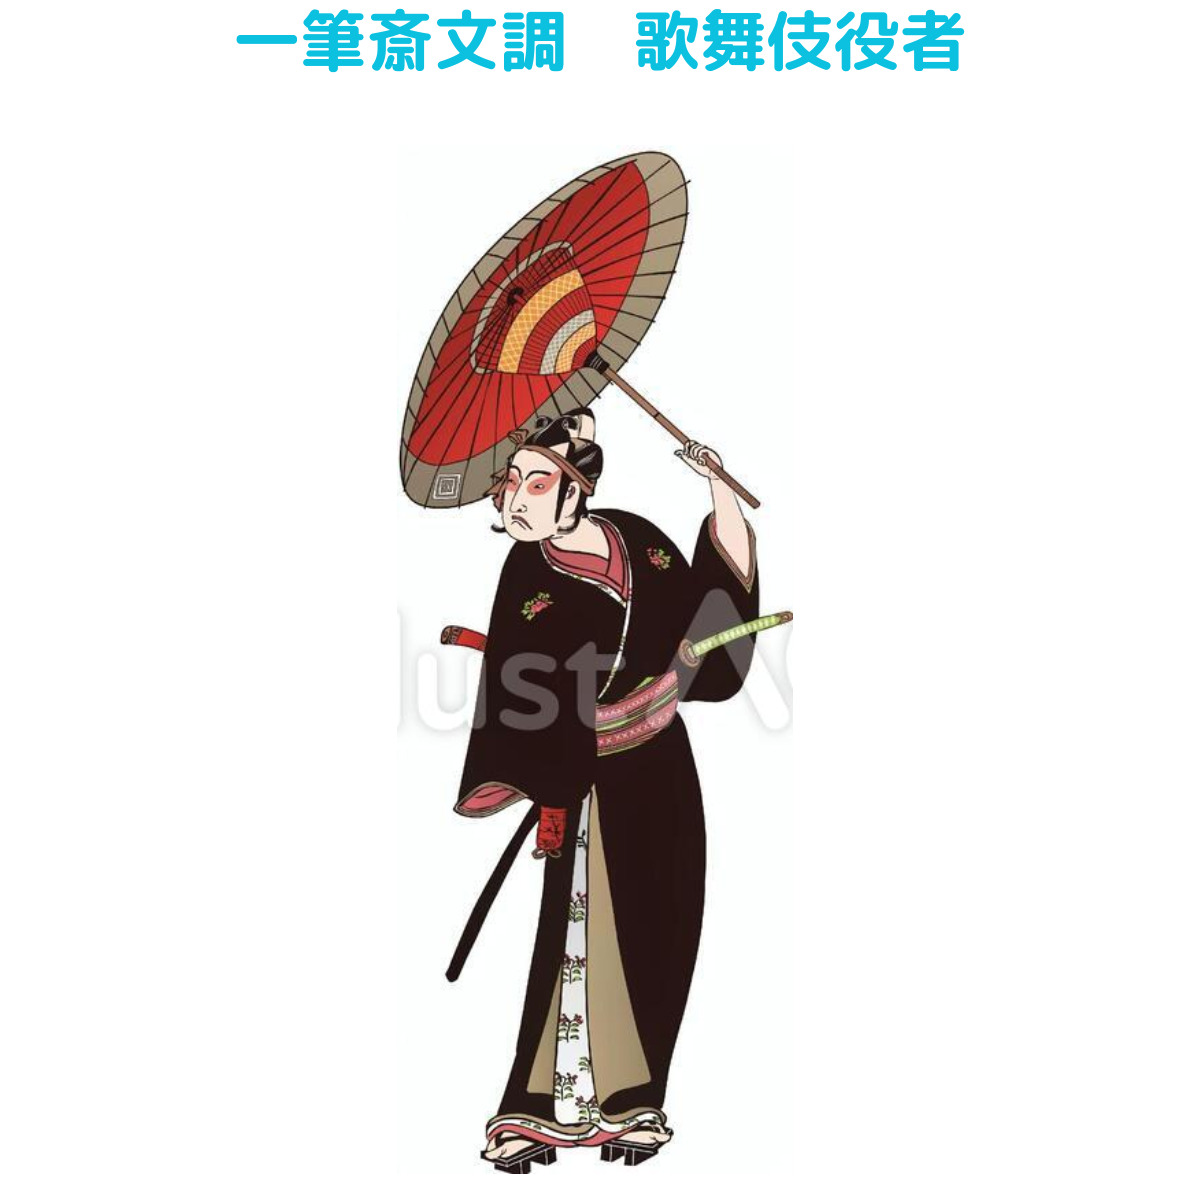 【イラスト20選】着物・男・横向きの画像17件目。一筆斎文調 歌舞伎役者全身の画像